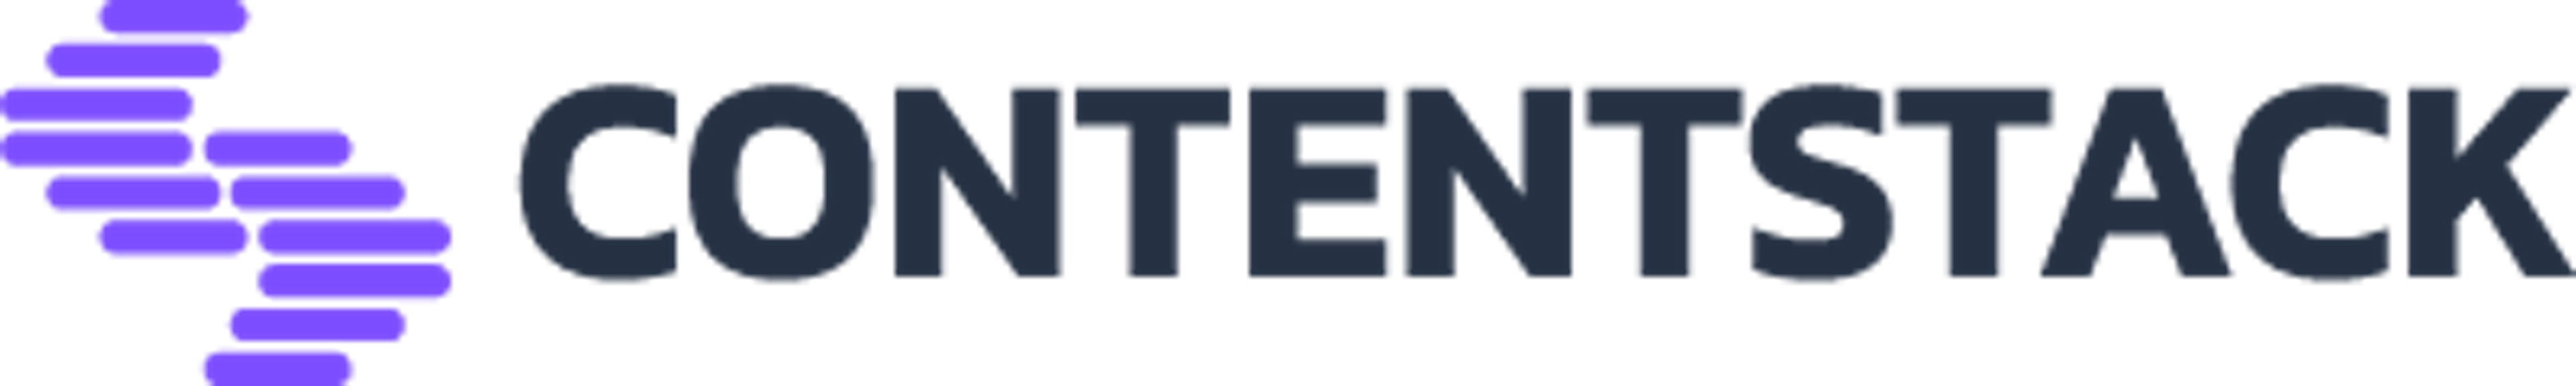 Contentstack logo.